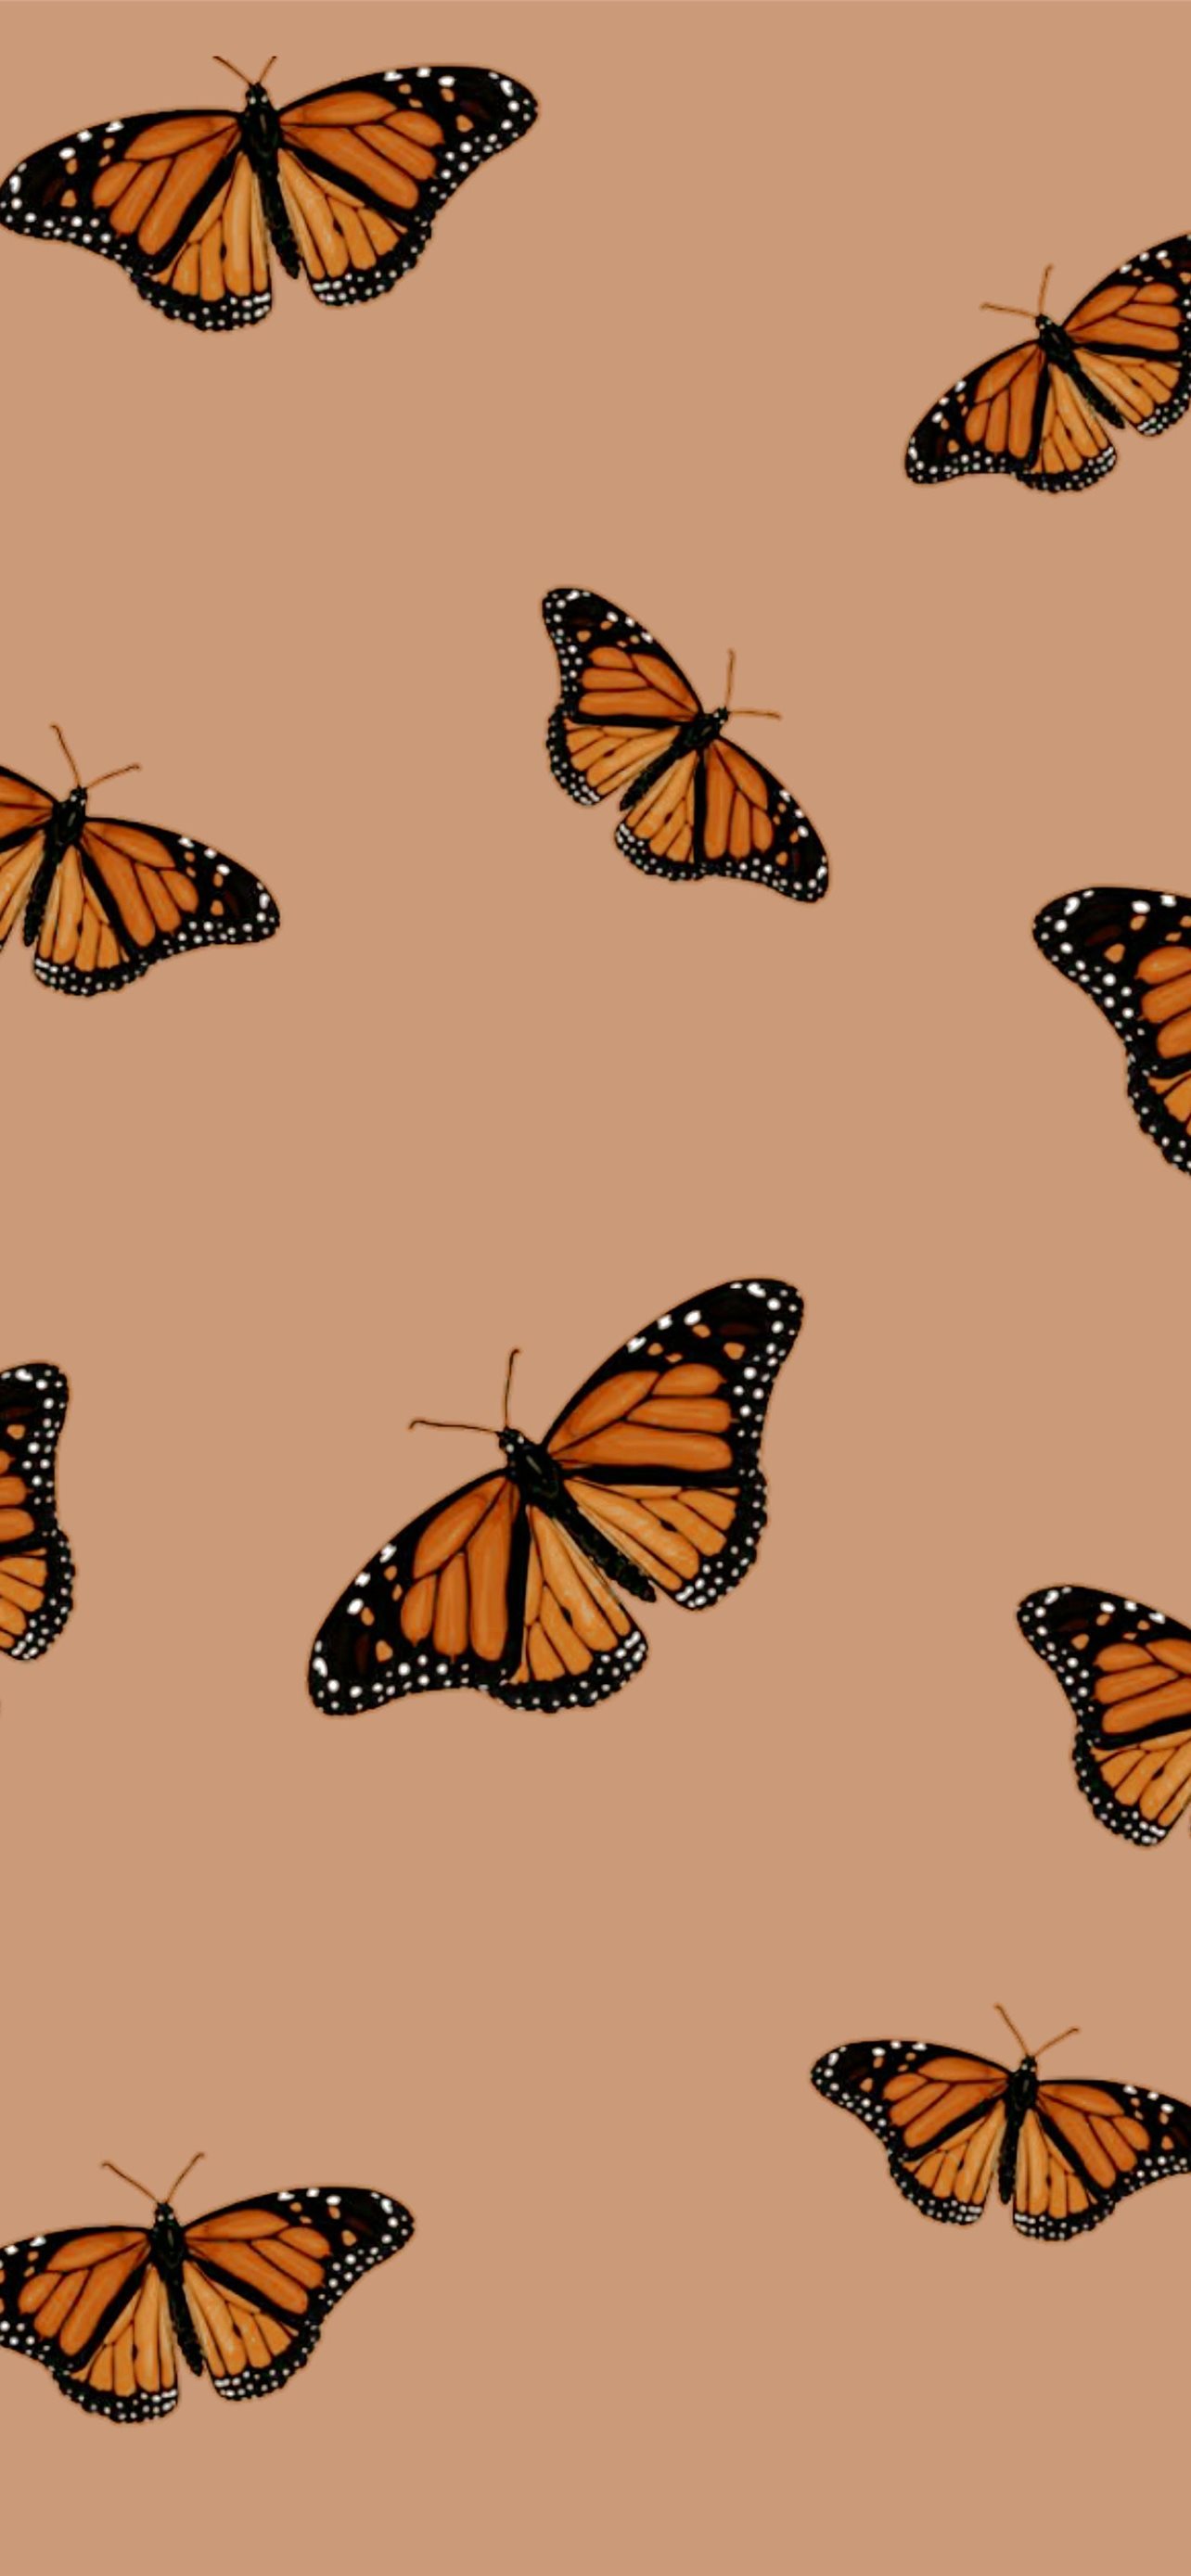 Best Butterfly iPhone HD Wallpaper